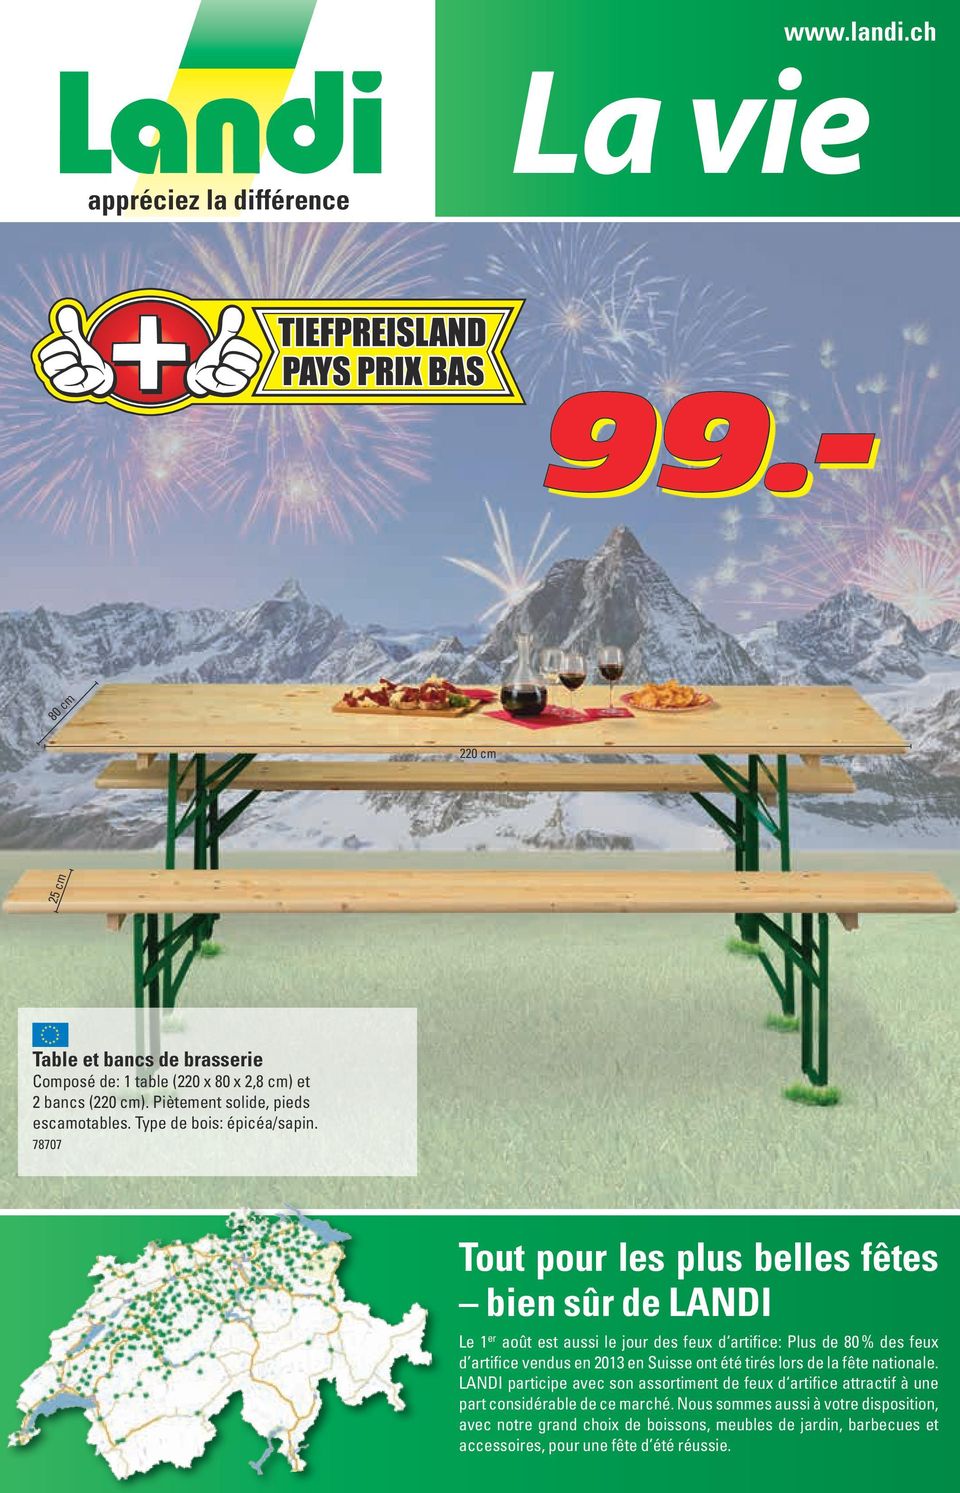 78707 Tout pour les plus belles fêtes bien sûr de LANDI Le 1 er août est aussi le jour des feux d artifice: Plus de 80 % des feux d artifice vendus en 2013 en Suisse ont